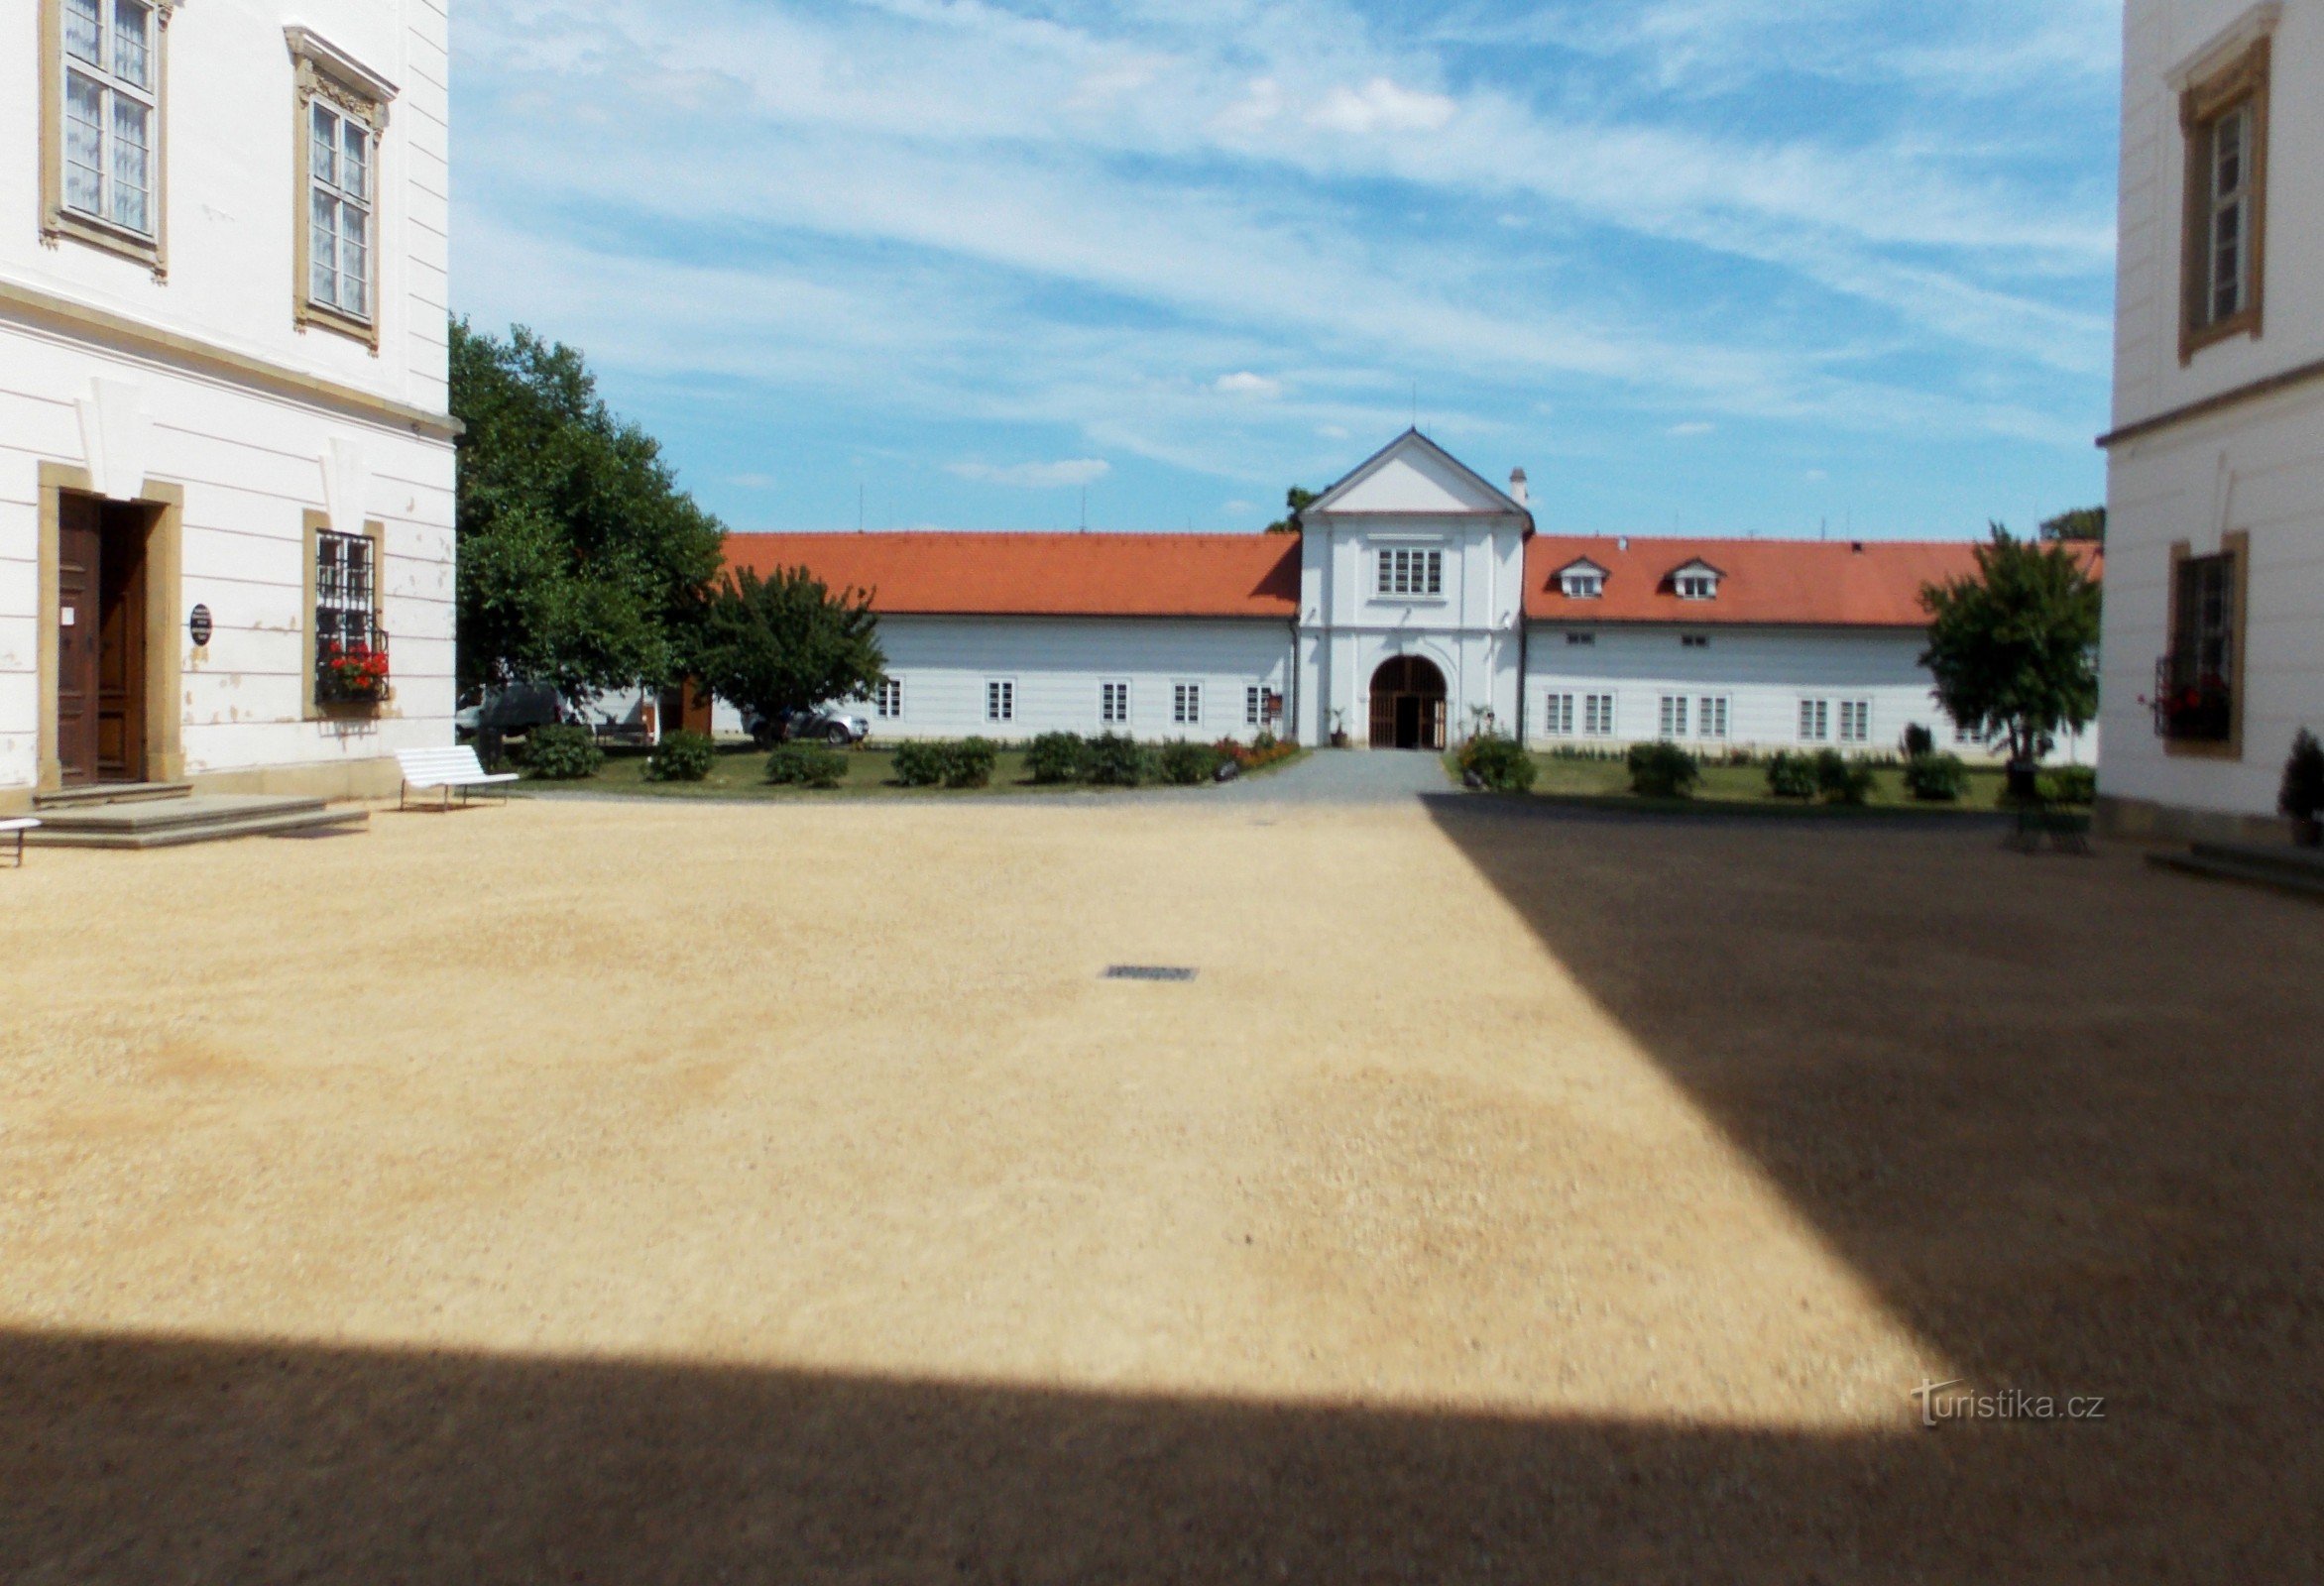 Sommervandring gennem slottet og haven i Vizovice